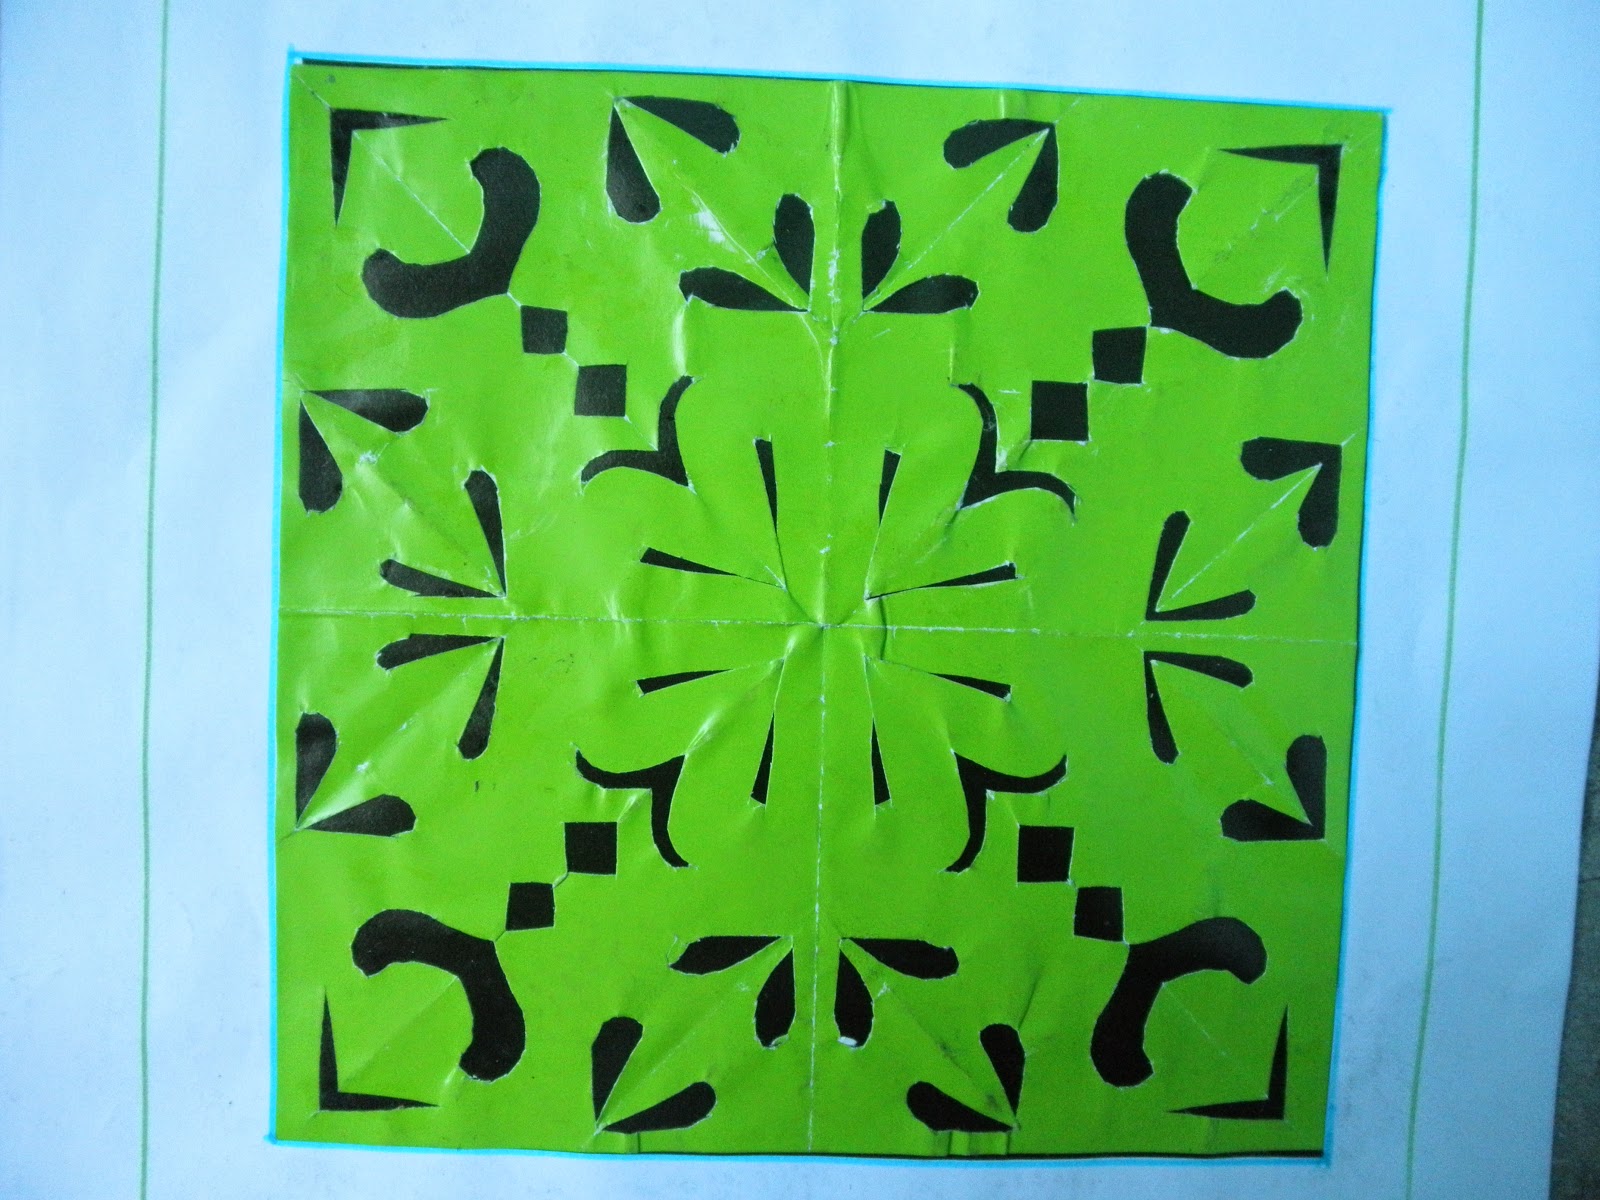  kreasi  cantik dan lucu dari  kertas  origami  Goresan Kecil